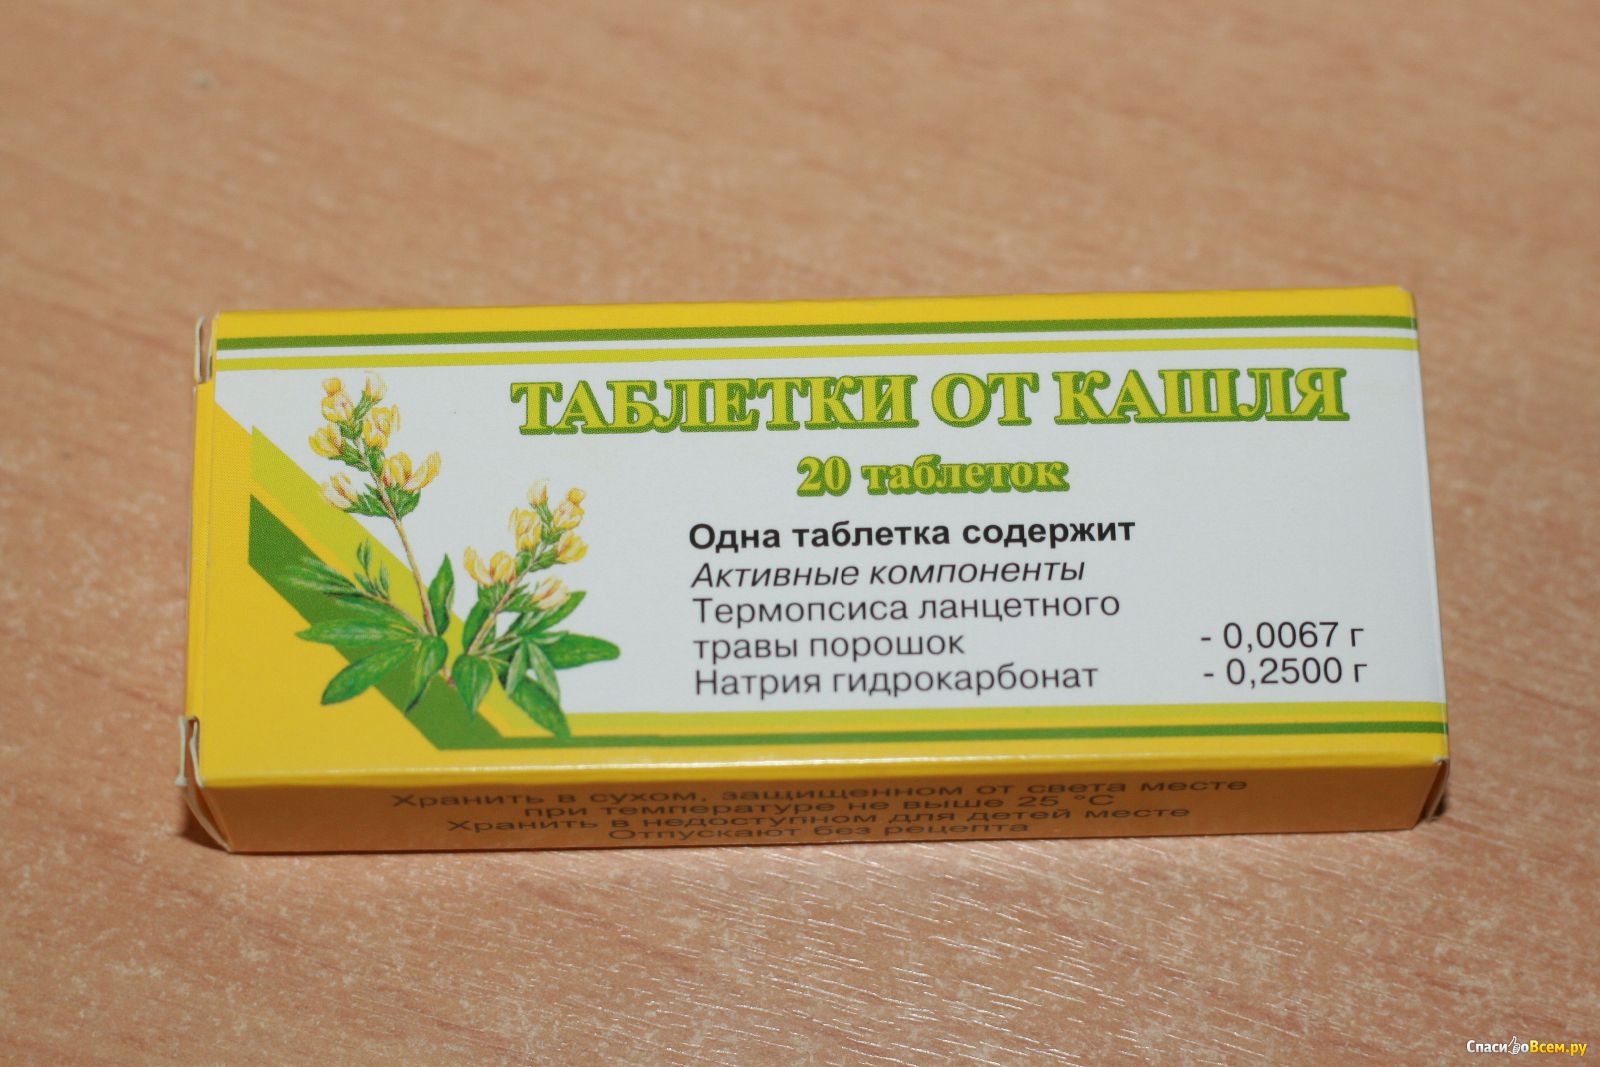 Лекарства от кашля взрослым недорогие и эффективные